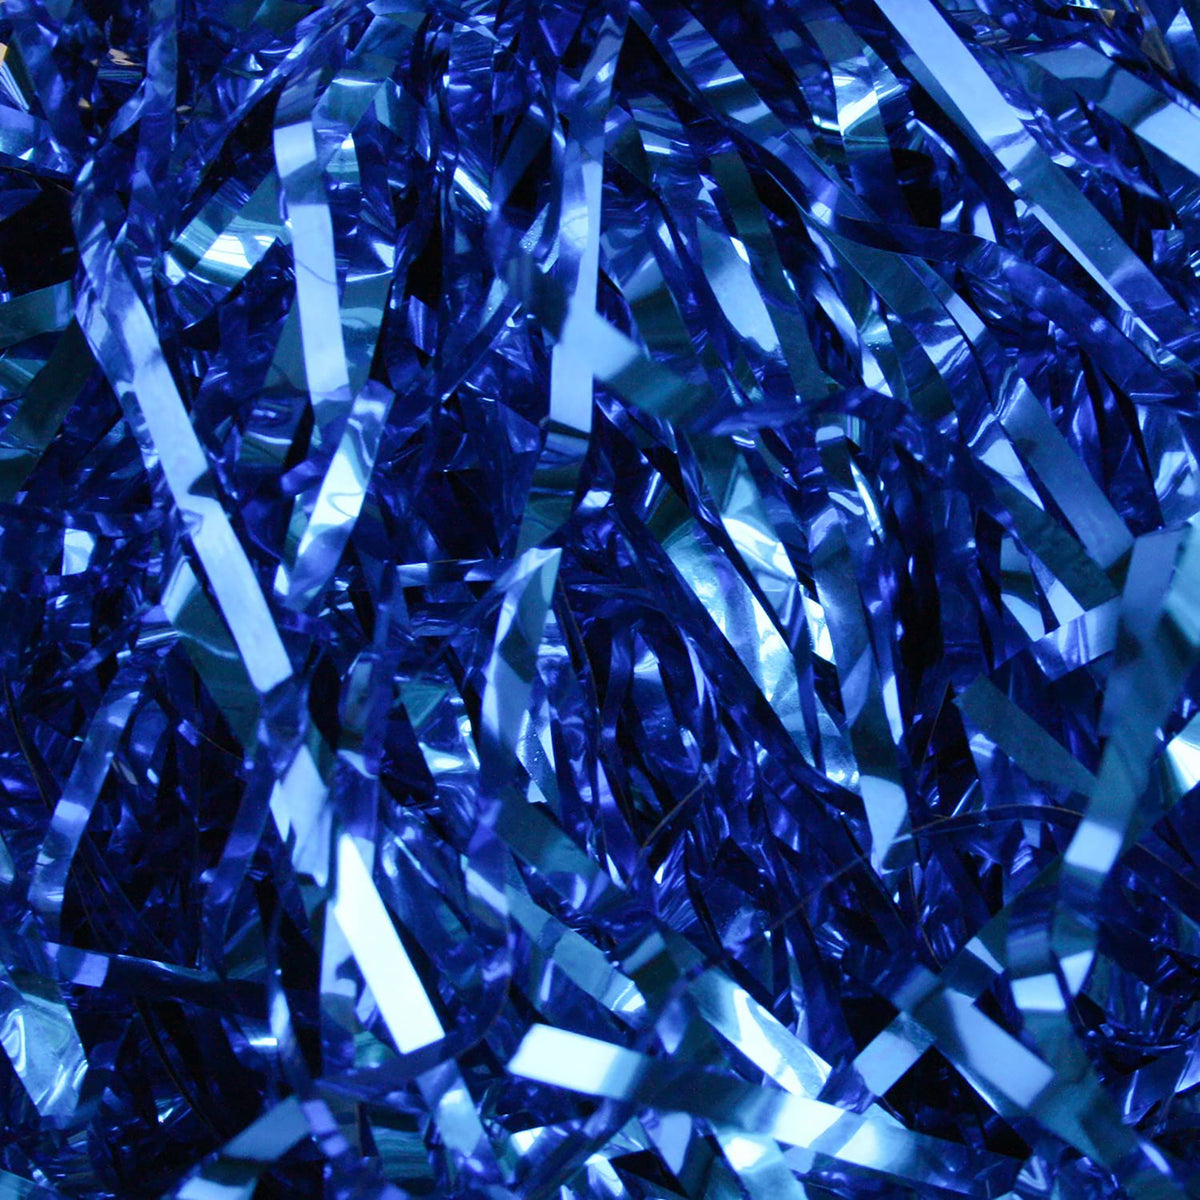 Metallic Shredded Tissue Paper for Packaging and Decor - Dark Blue